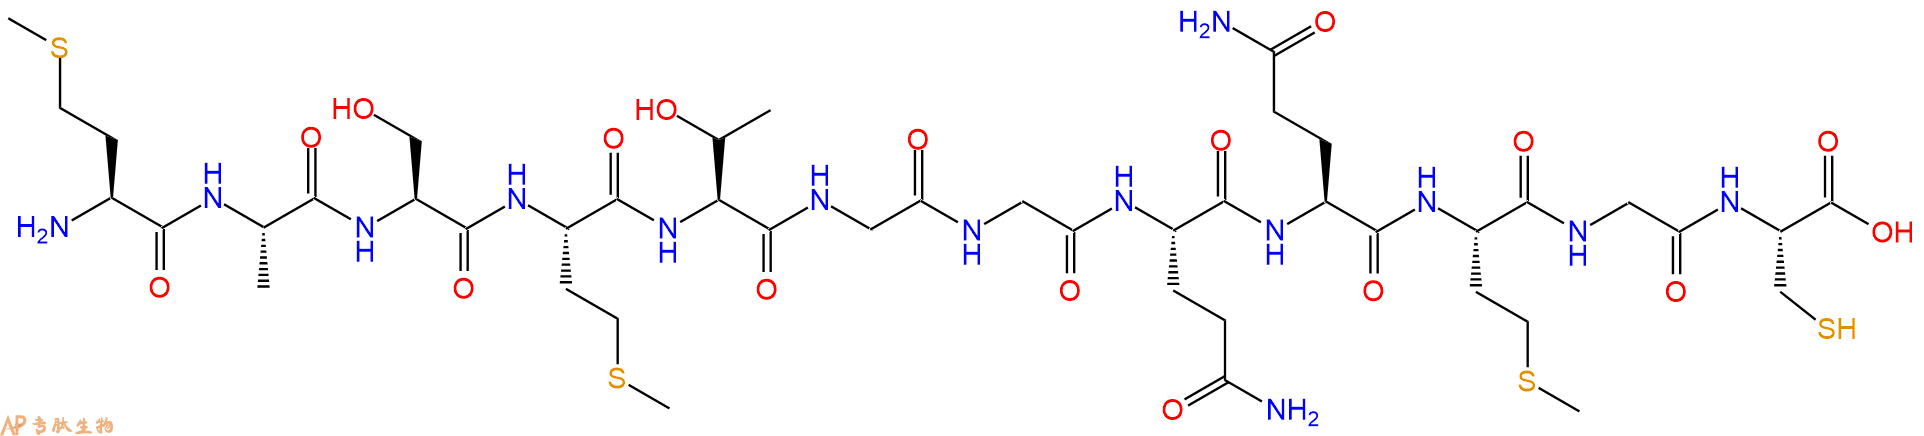 专肽生物产品多肽标签T7 tag-Cys